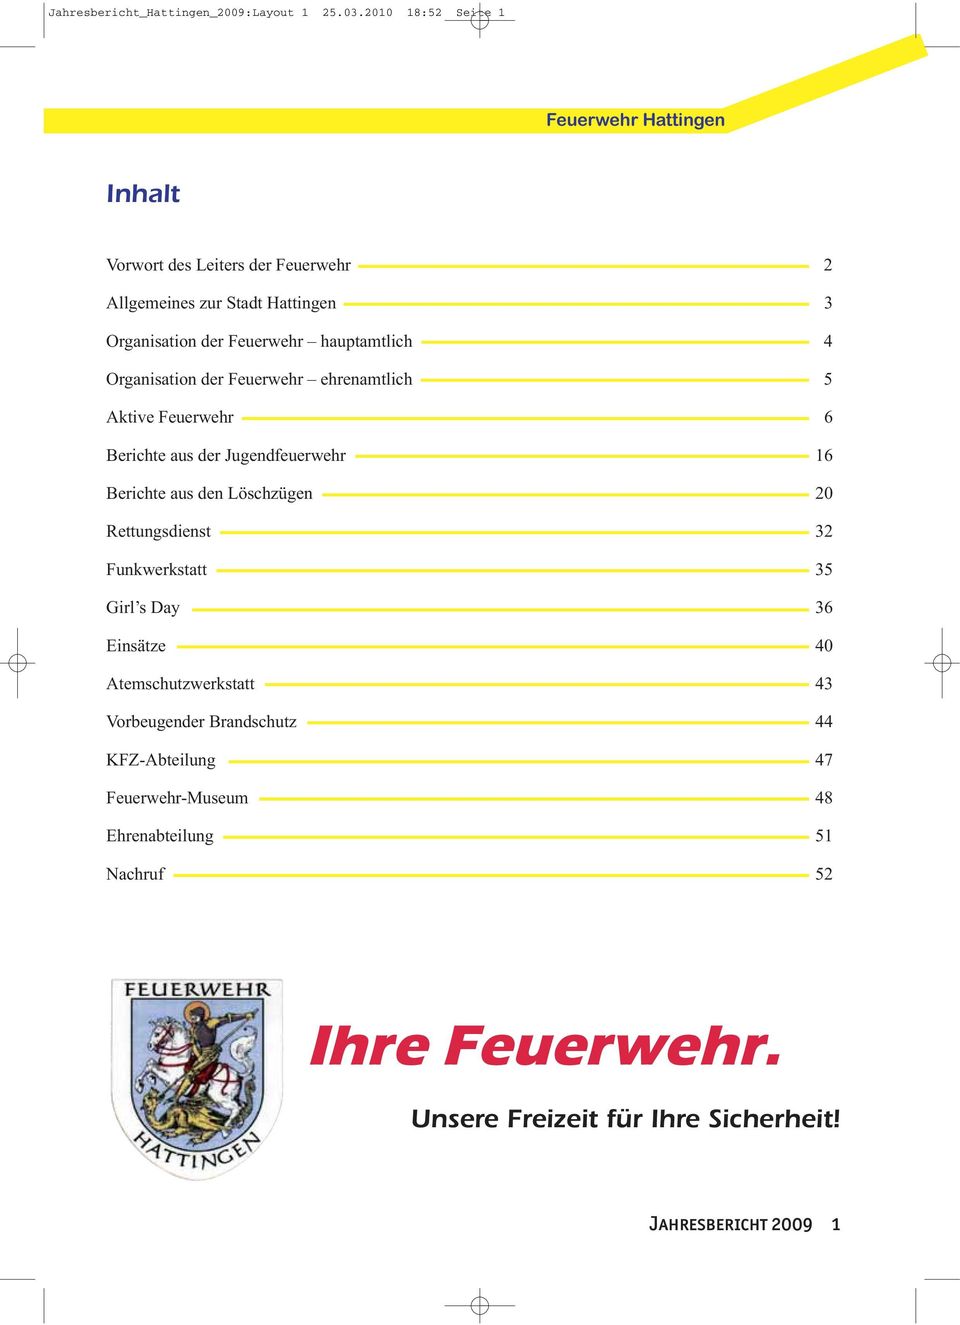 Organisation der Feuerwehr ehrenamtlich 5 Aktive Feuerwehr 6 Berichte aus der Jugendfeuerwehr 16 Berichte aus den Löschzügen 20